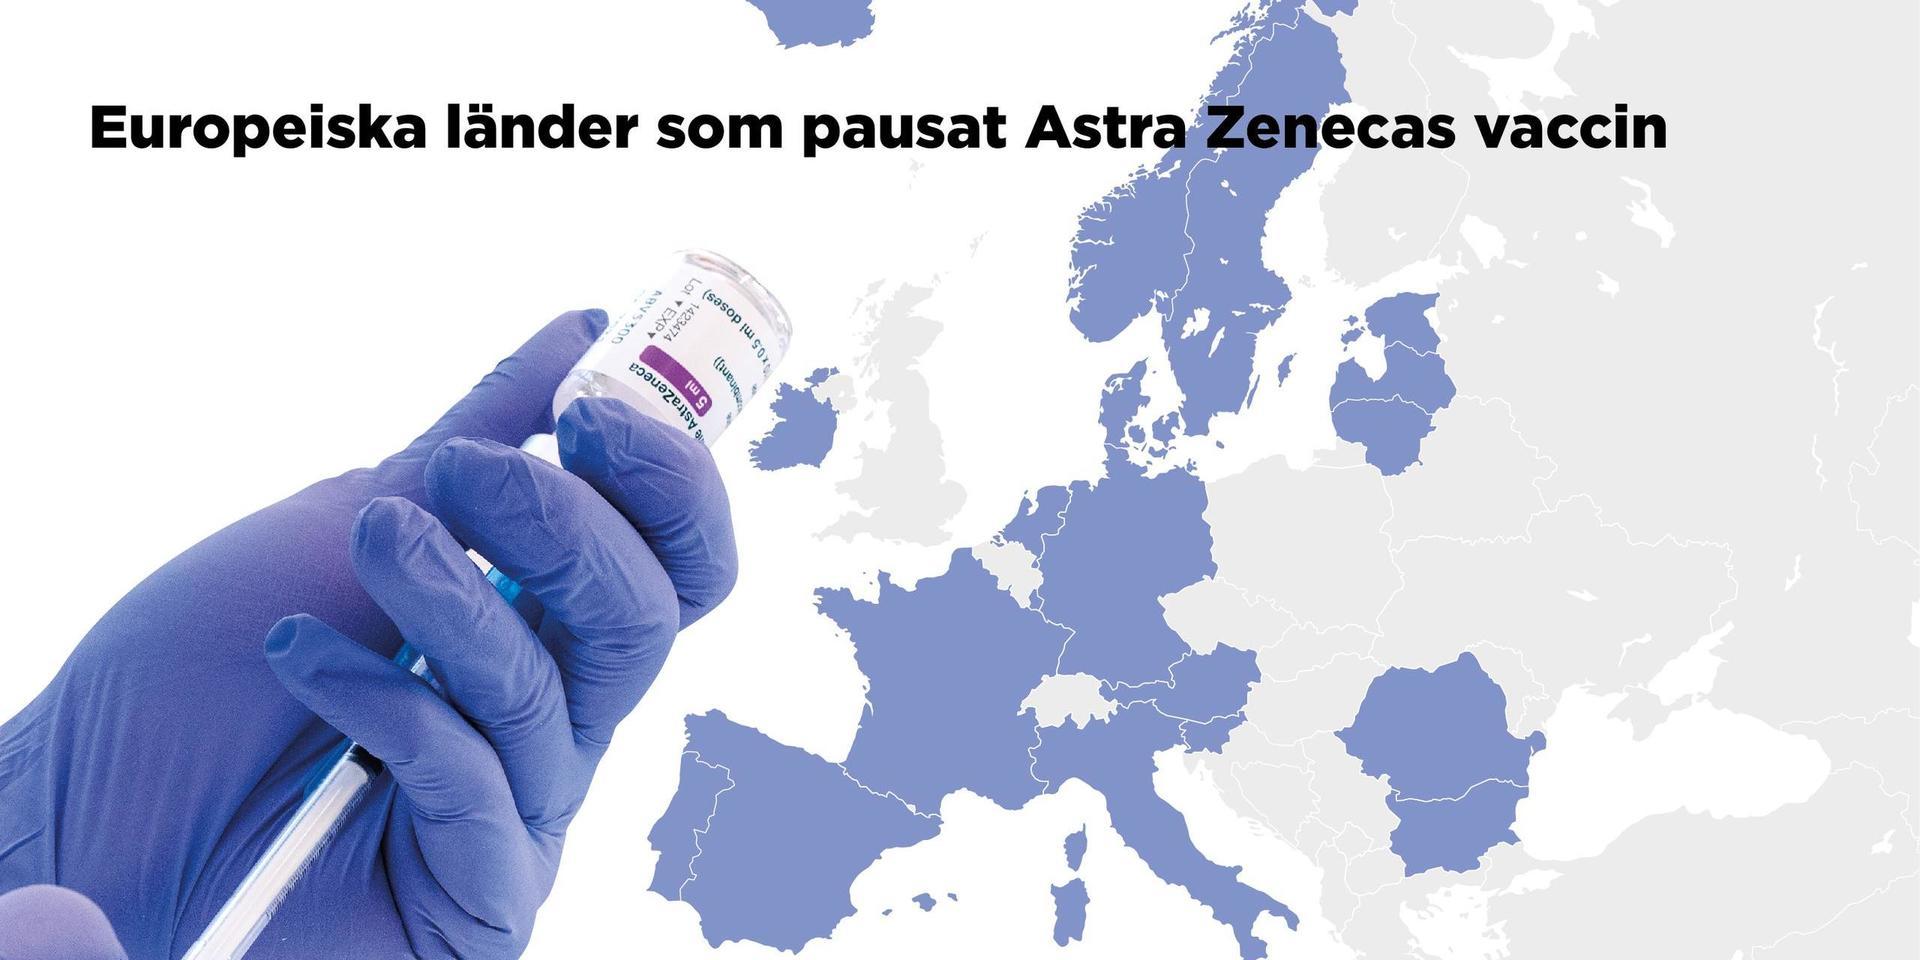 Karta som visar europeiska länder som har pausat Astra Zenecas vaccin.